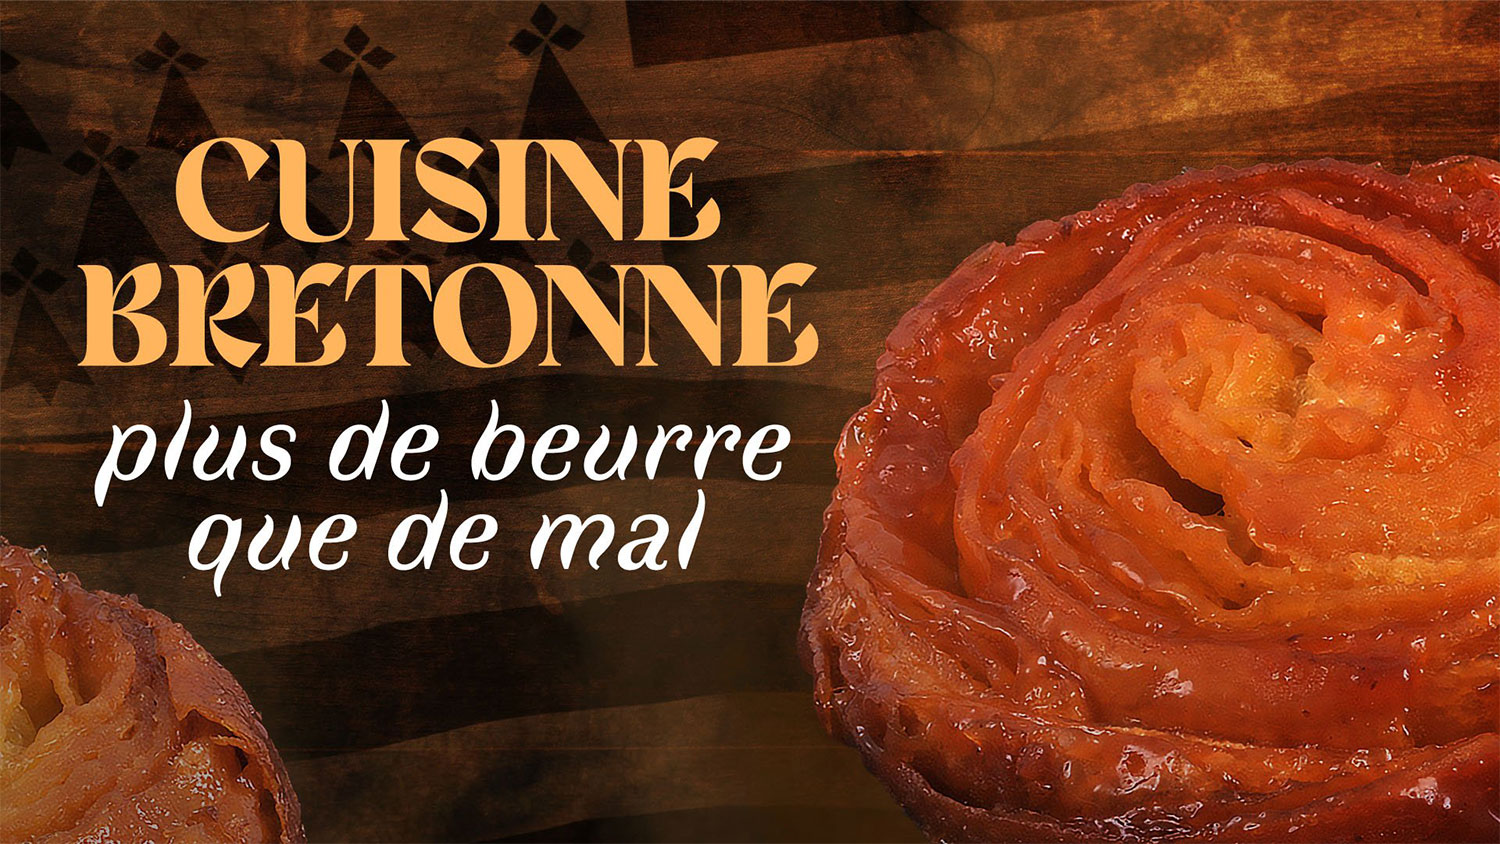 Cuisine bretonne : plus de beurre que de mal – France 5